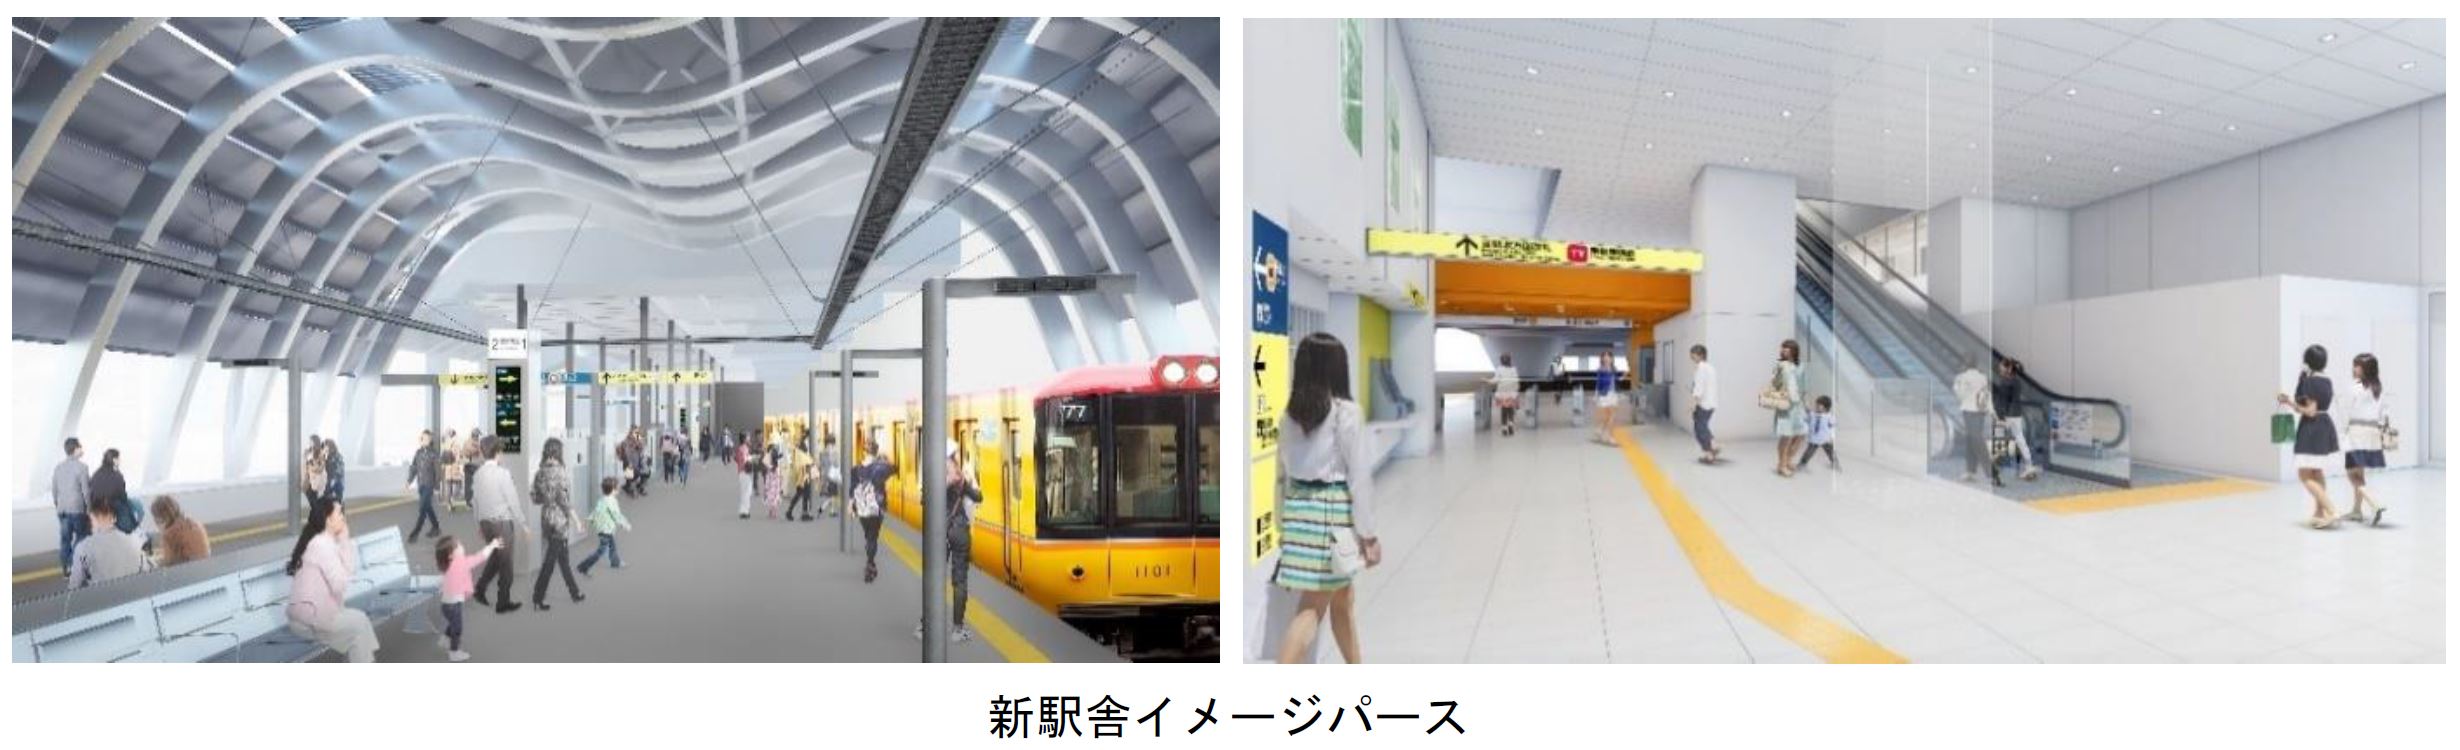 銀座線渋谷駅が生まれ変わります 東京メトロのプレスリリース